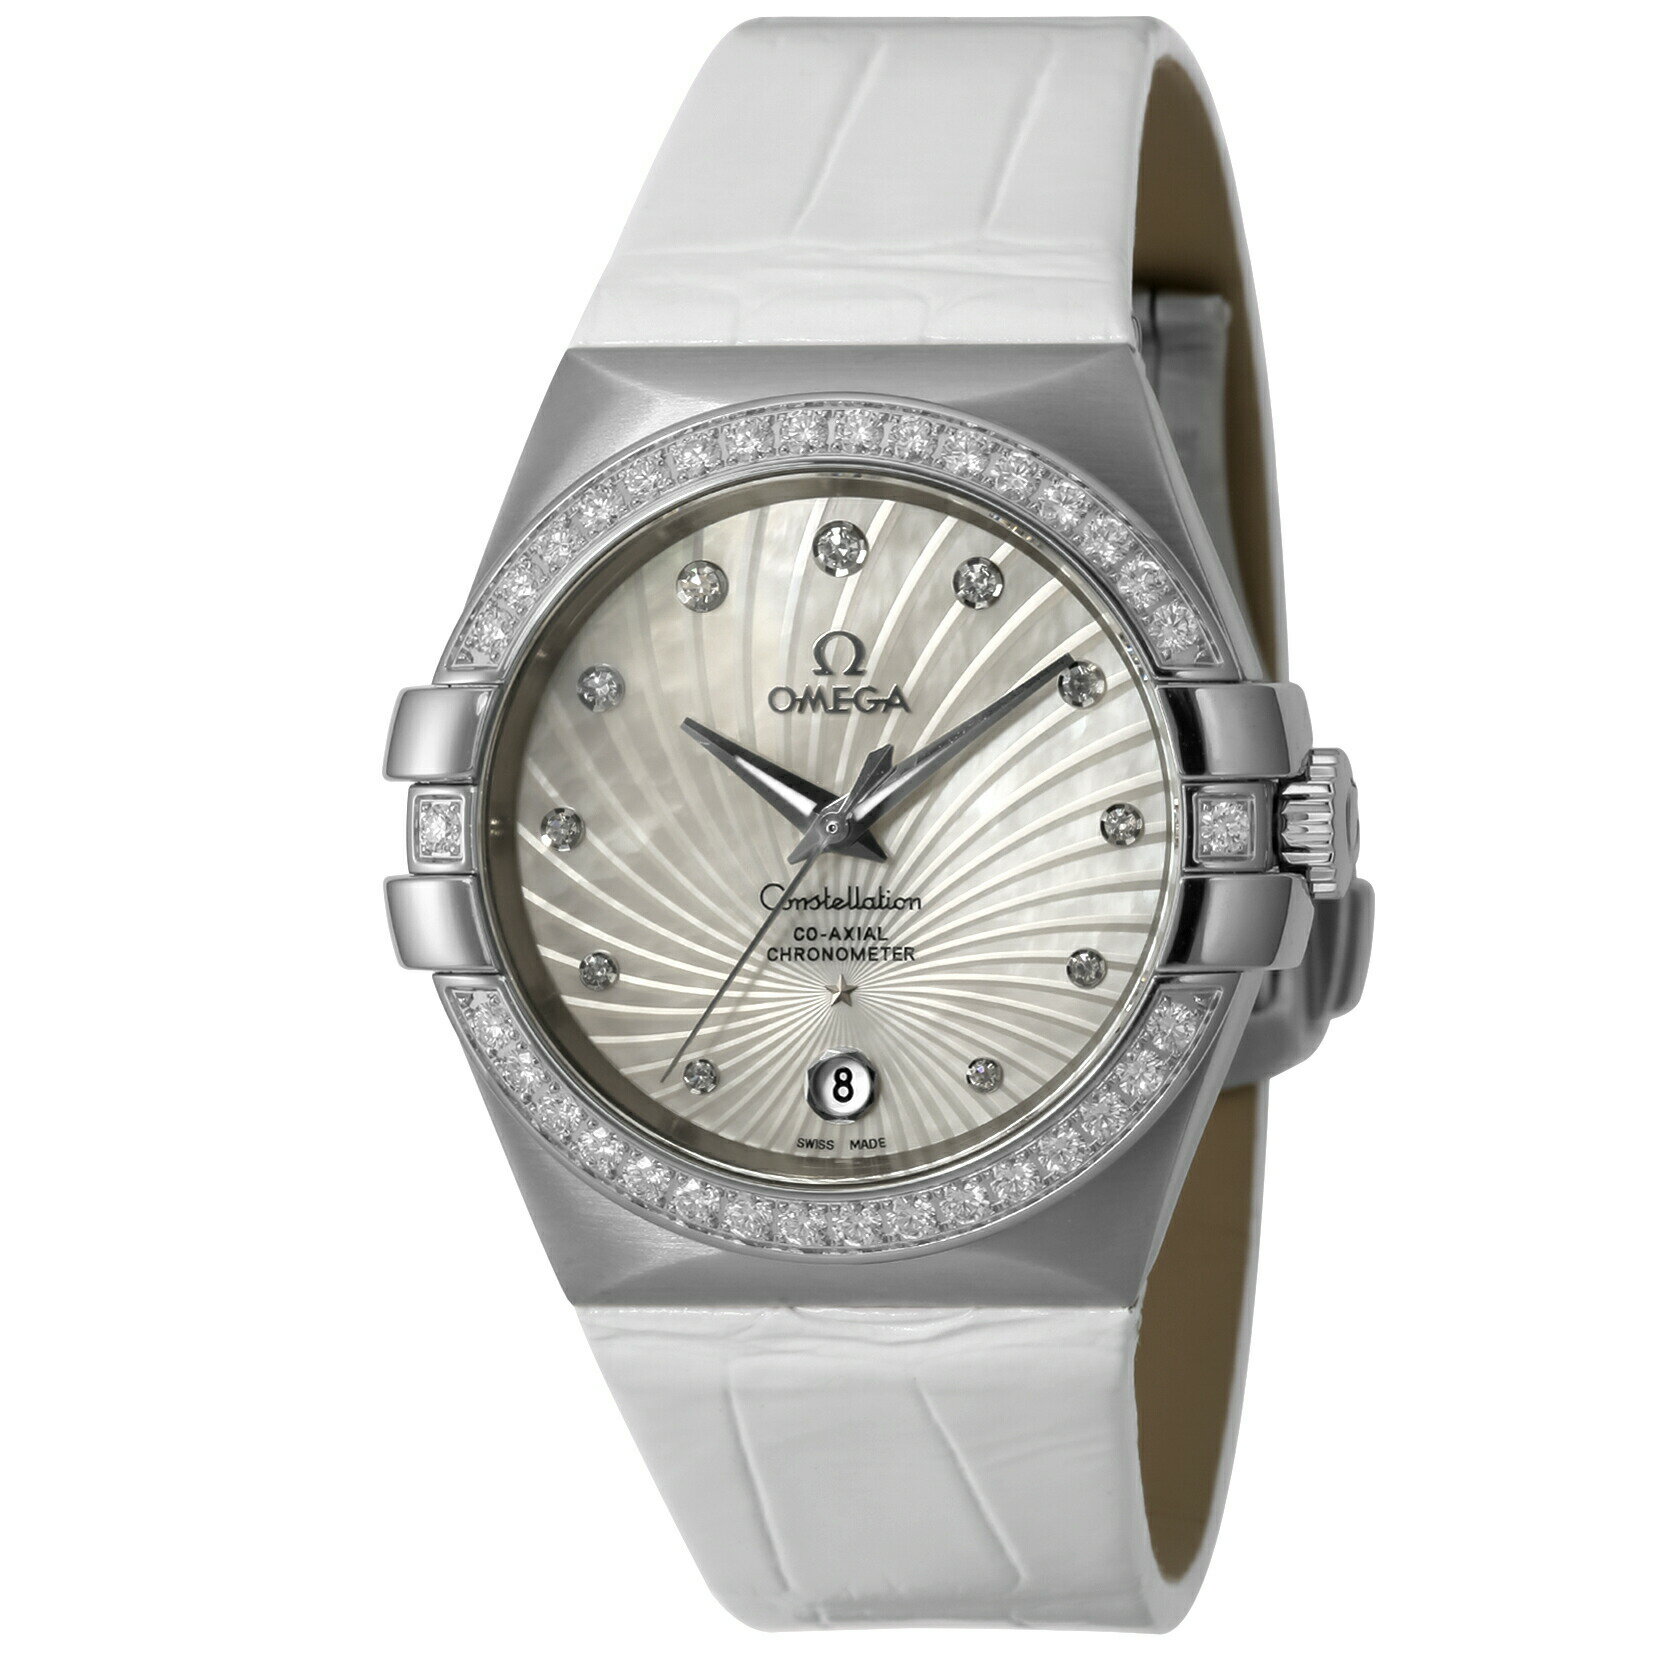 コンステレーション オメガ コンステレーション 35mm 自動巻き 腕時計 レディース ダイヤモンド OMEGA 123.18.35.20.55.001 アナログ ホワイトシェル ホワイト 白 スイス製 プレゼント ギフト